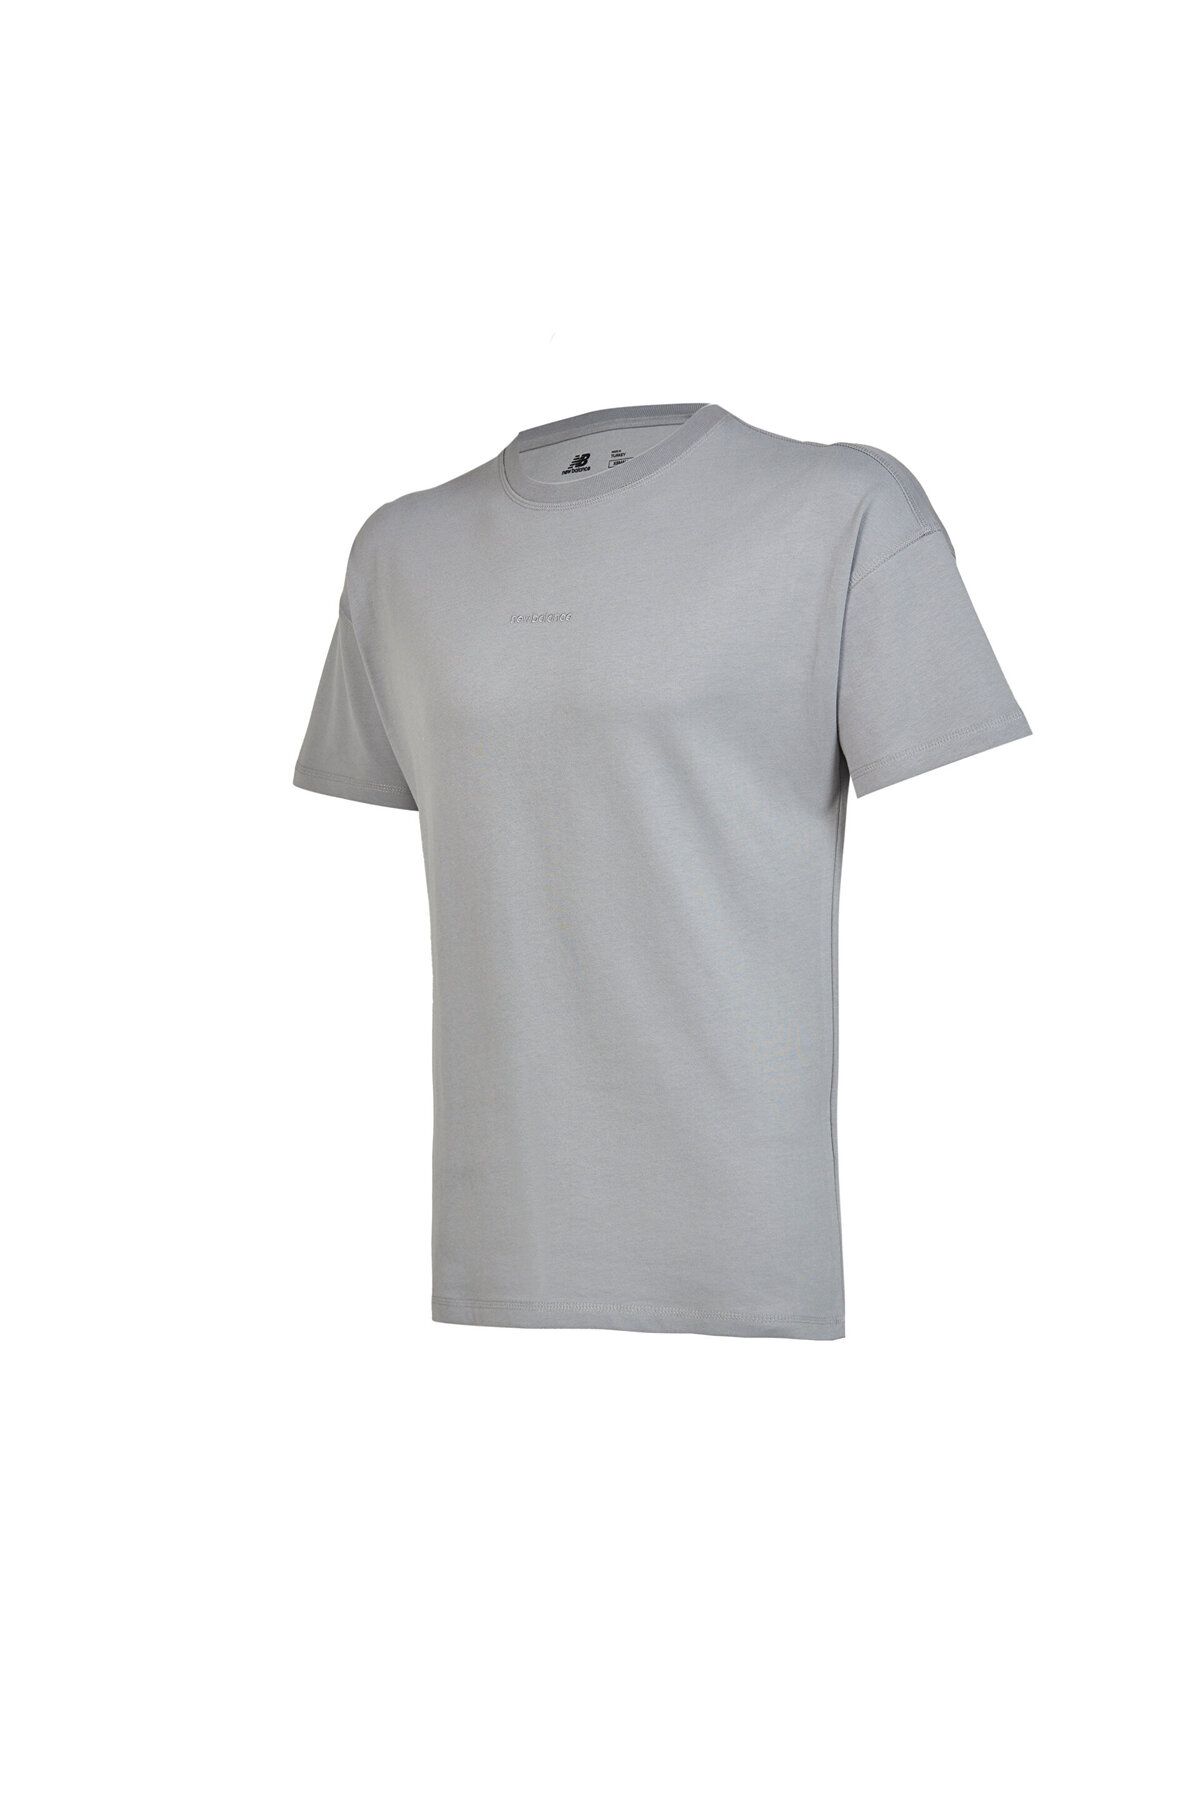 New Balance Nb Unisex Lifestyle T-shirt Unisex Antrasit Tshirt Unt1366-blu